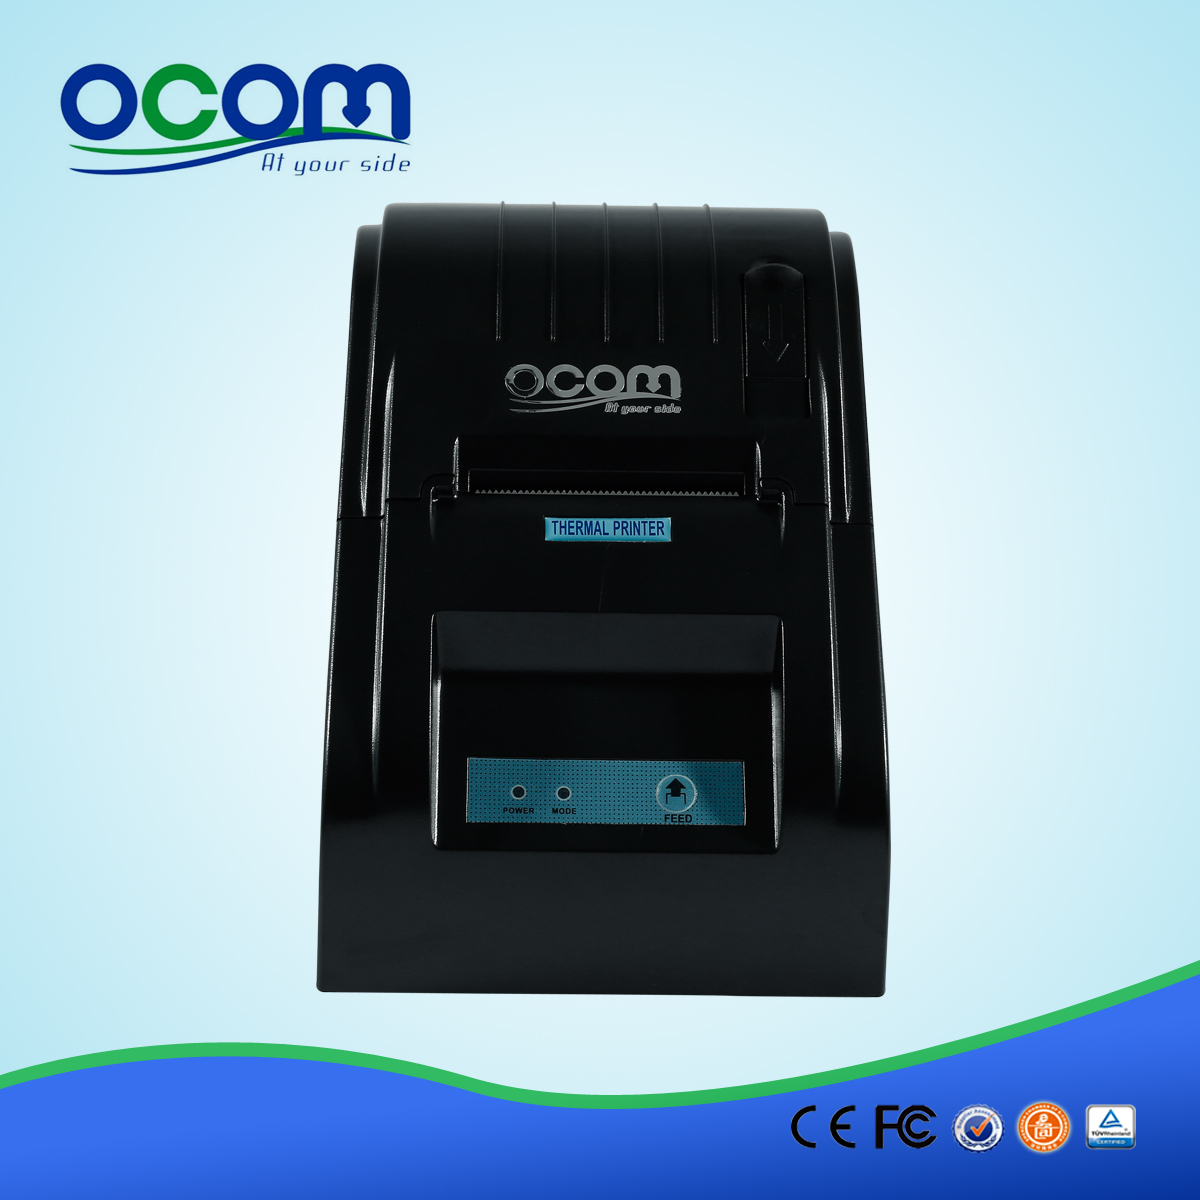 OCPP-586-U Рекламный 58-мм термоприемный принтер